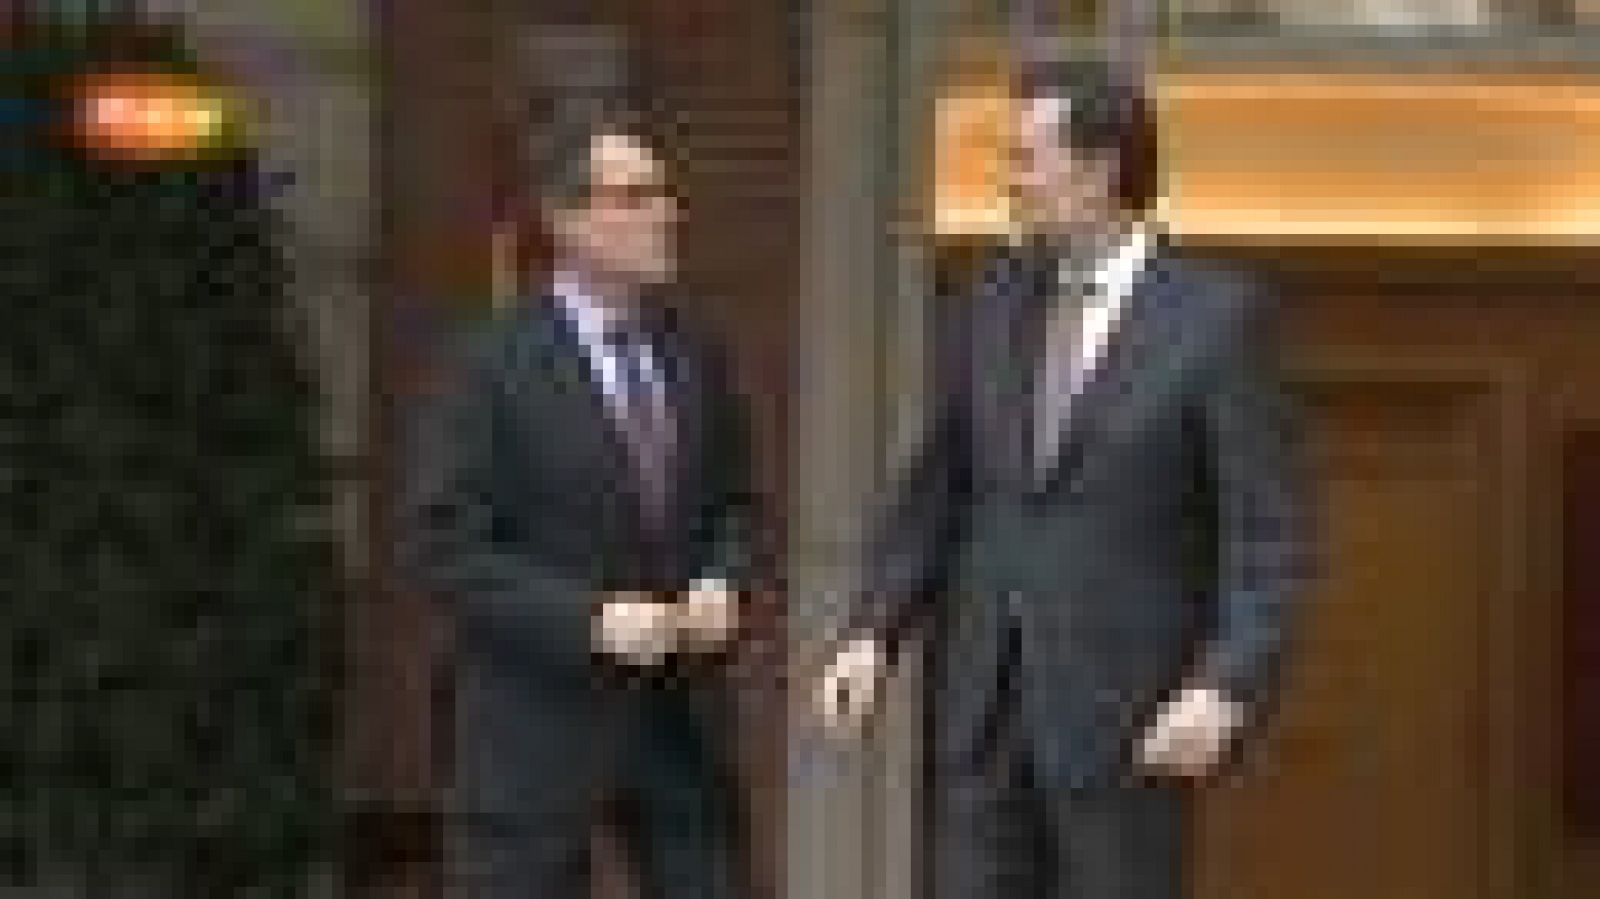 El jefe del Ejecutivo, Mariano Rajoy, ha recibido este miércoles al presidente de la Generalitat, Artur Mas, en el Palacio de La Moncloa y, mientras intercambiaban un saludo ante las cámaras de televisión y fotógrafos, se ha escuchado al presidente decir: "Vivo en el lío".